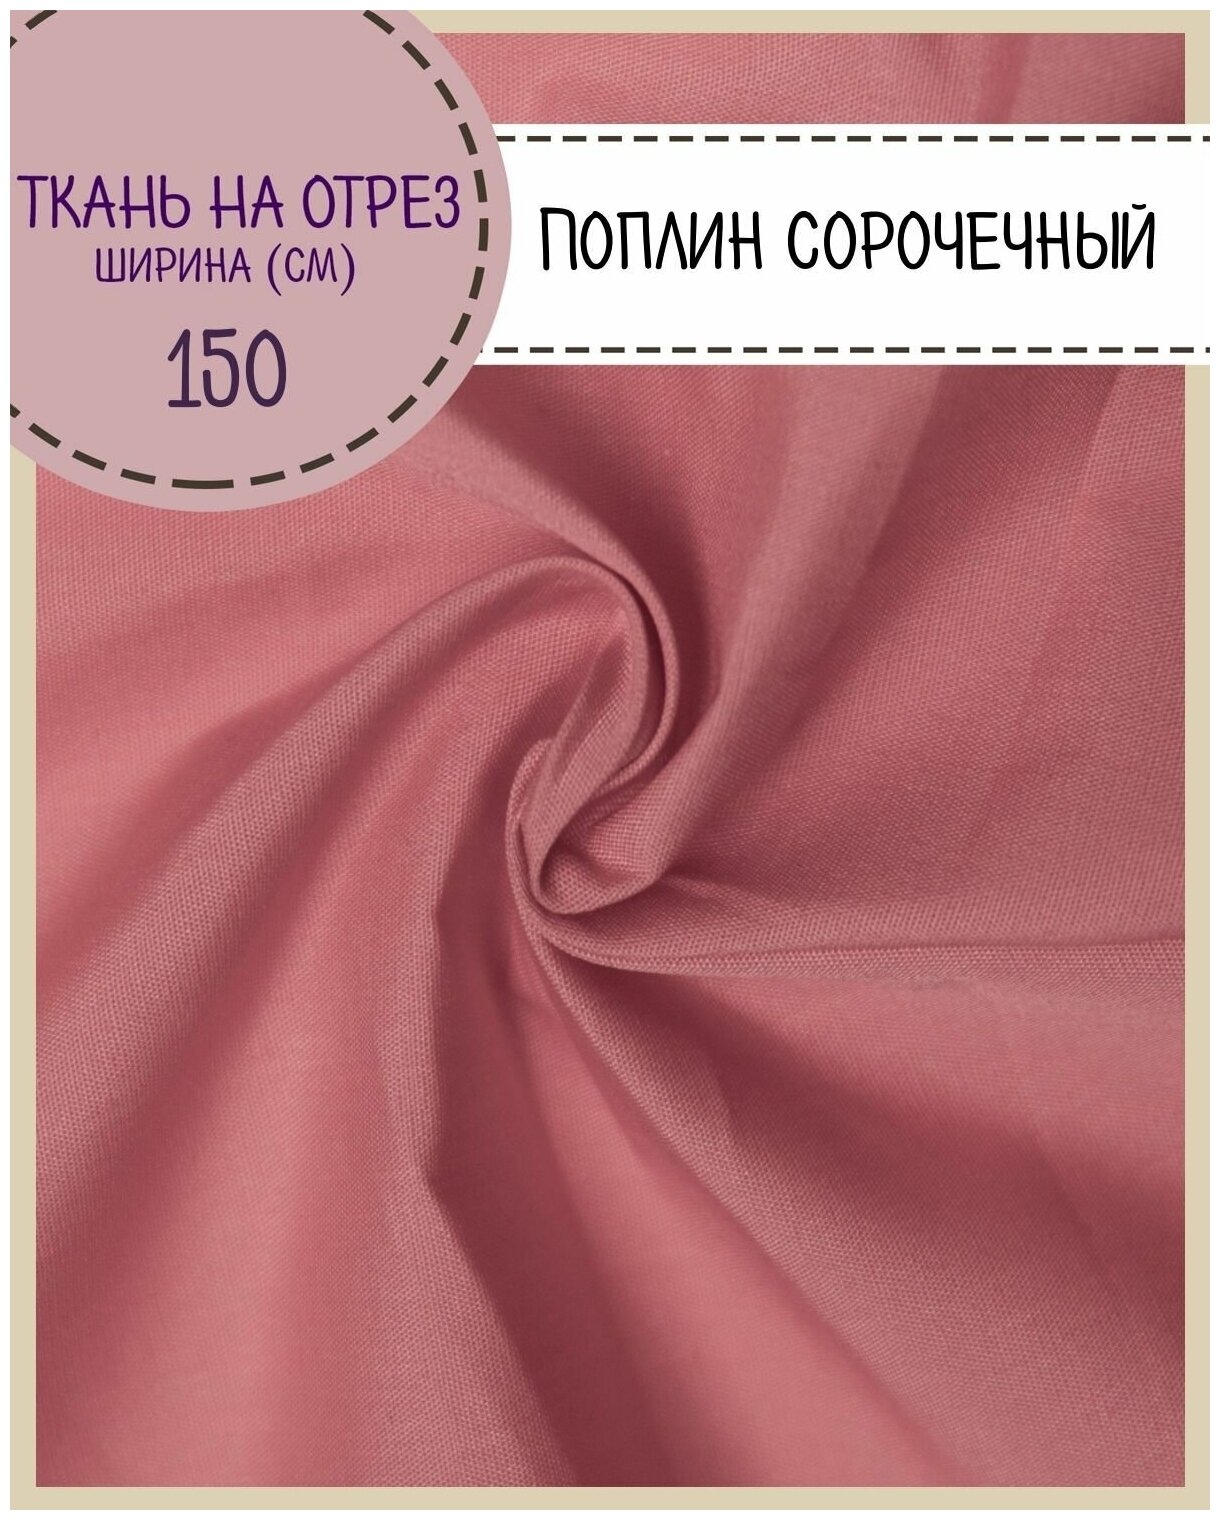 Ткань Сорочечная/рубашечная, цв. коралловый, пл. 115 г/м2, ш-150 см, на отрез, цена за пог. метр